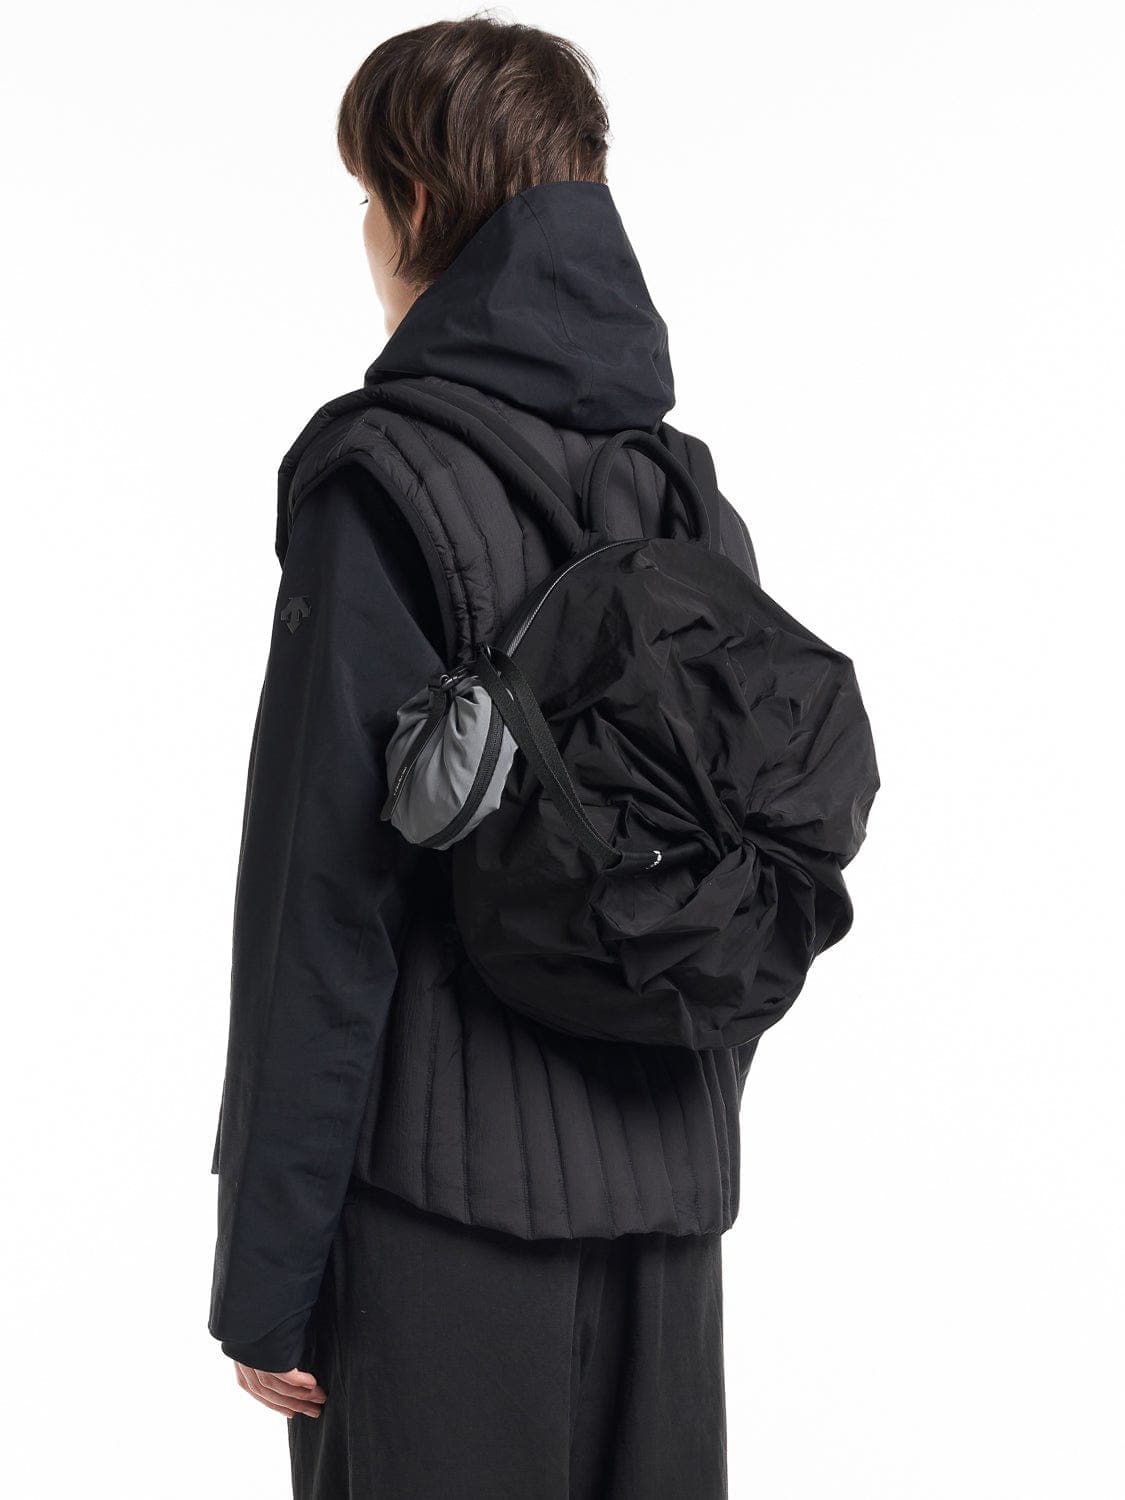 coteetciel Backpack Adria Infinity Black côte&ciel US 28980